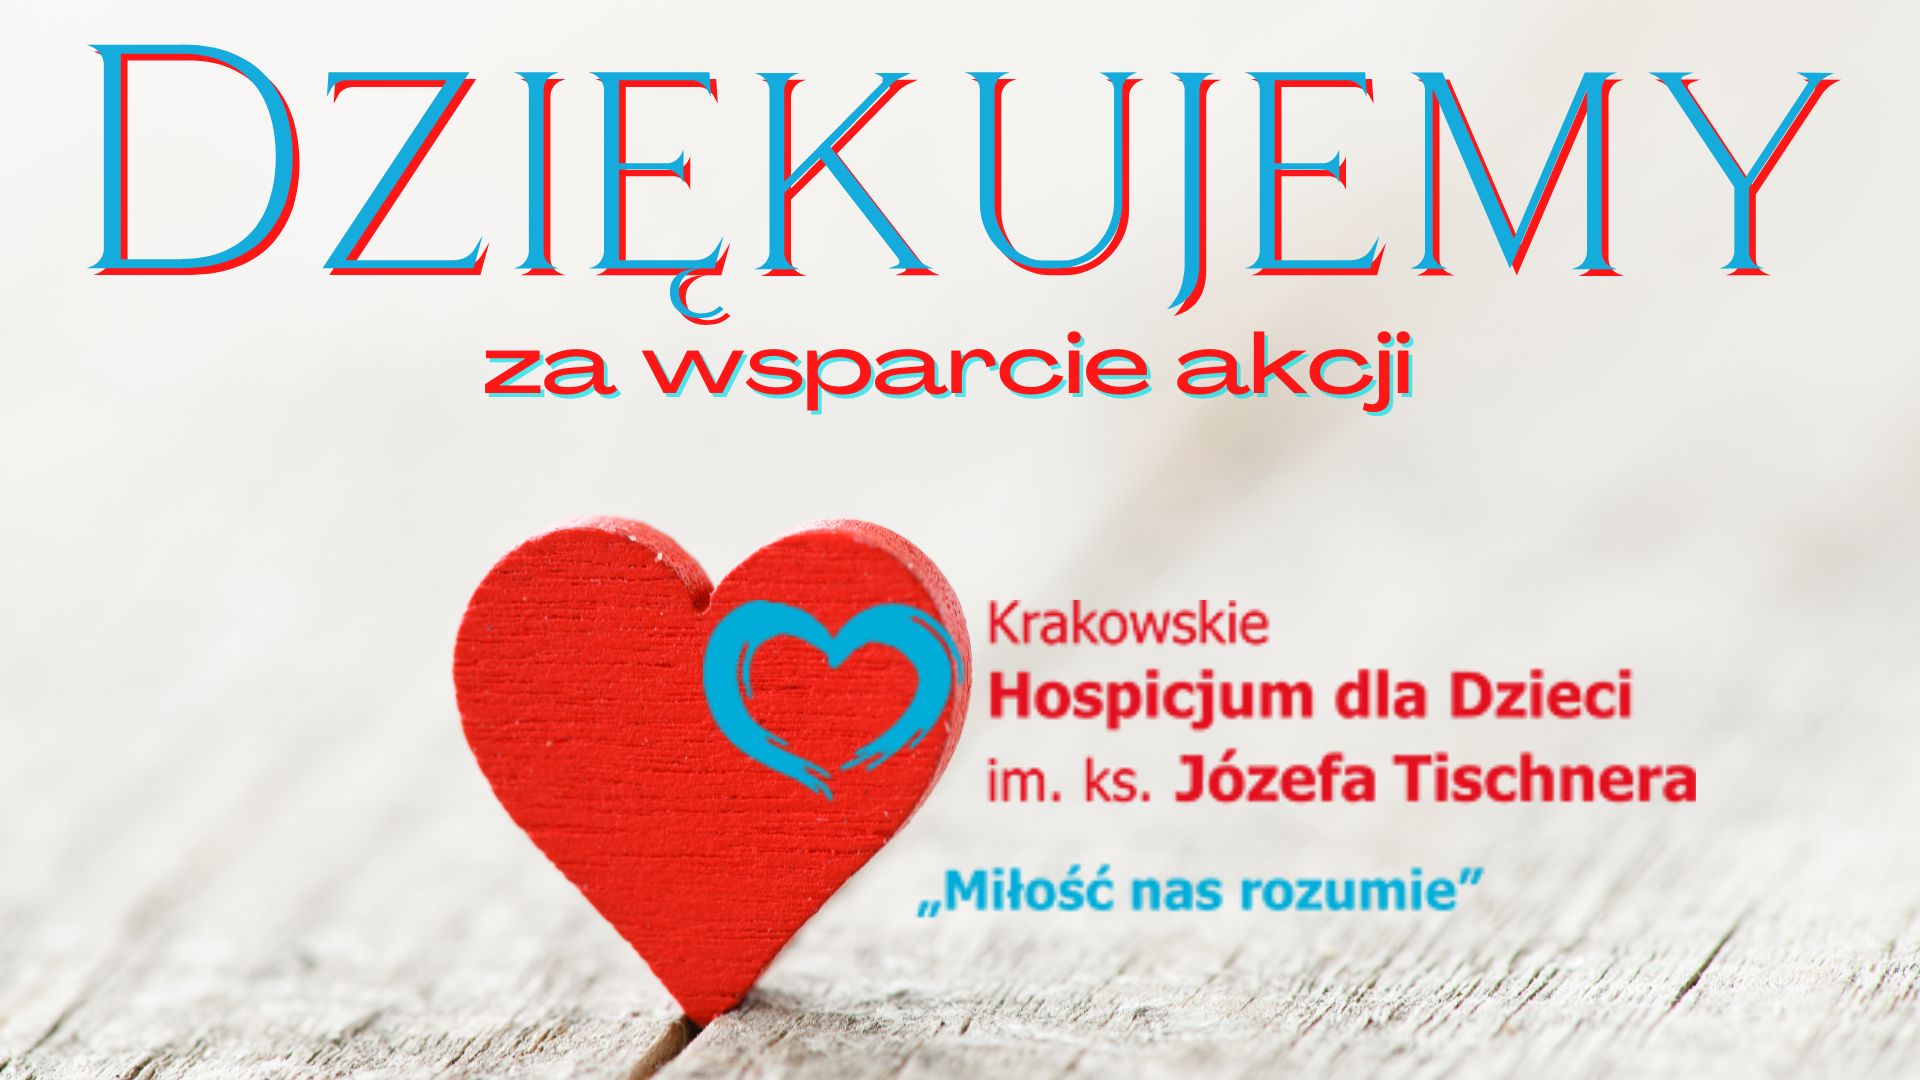 Dziękujemy za wsparcie akcji Krakowskie Hospicjum dla Dzieci im. ks. Józefa Tischnera „Miłość nas rozumie”